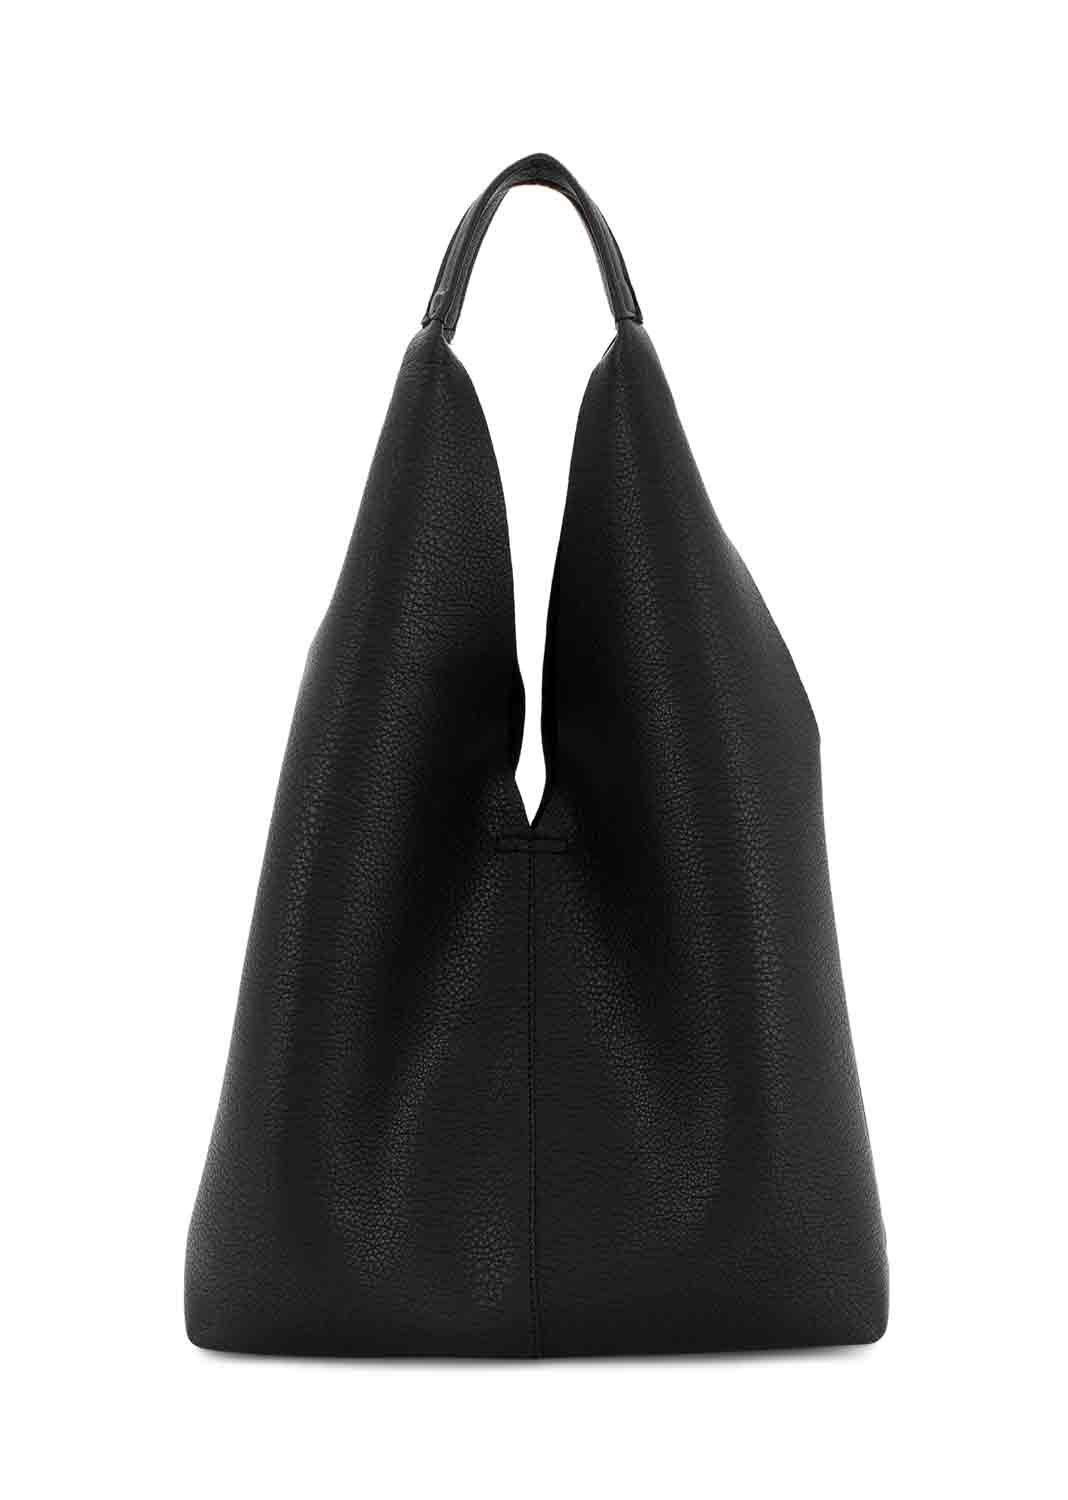 Slouchy Black Tote Bag